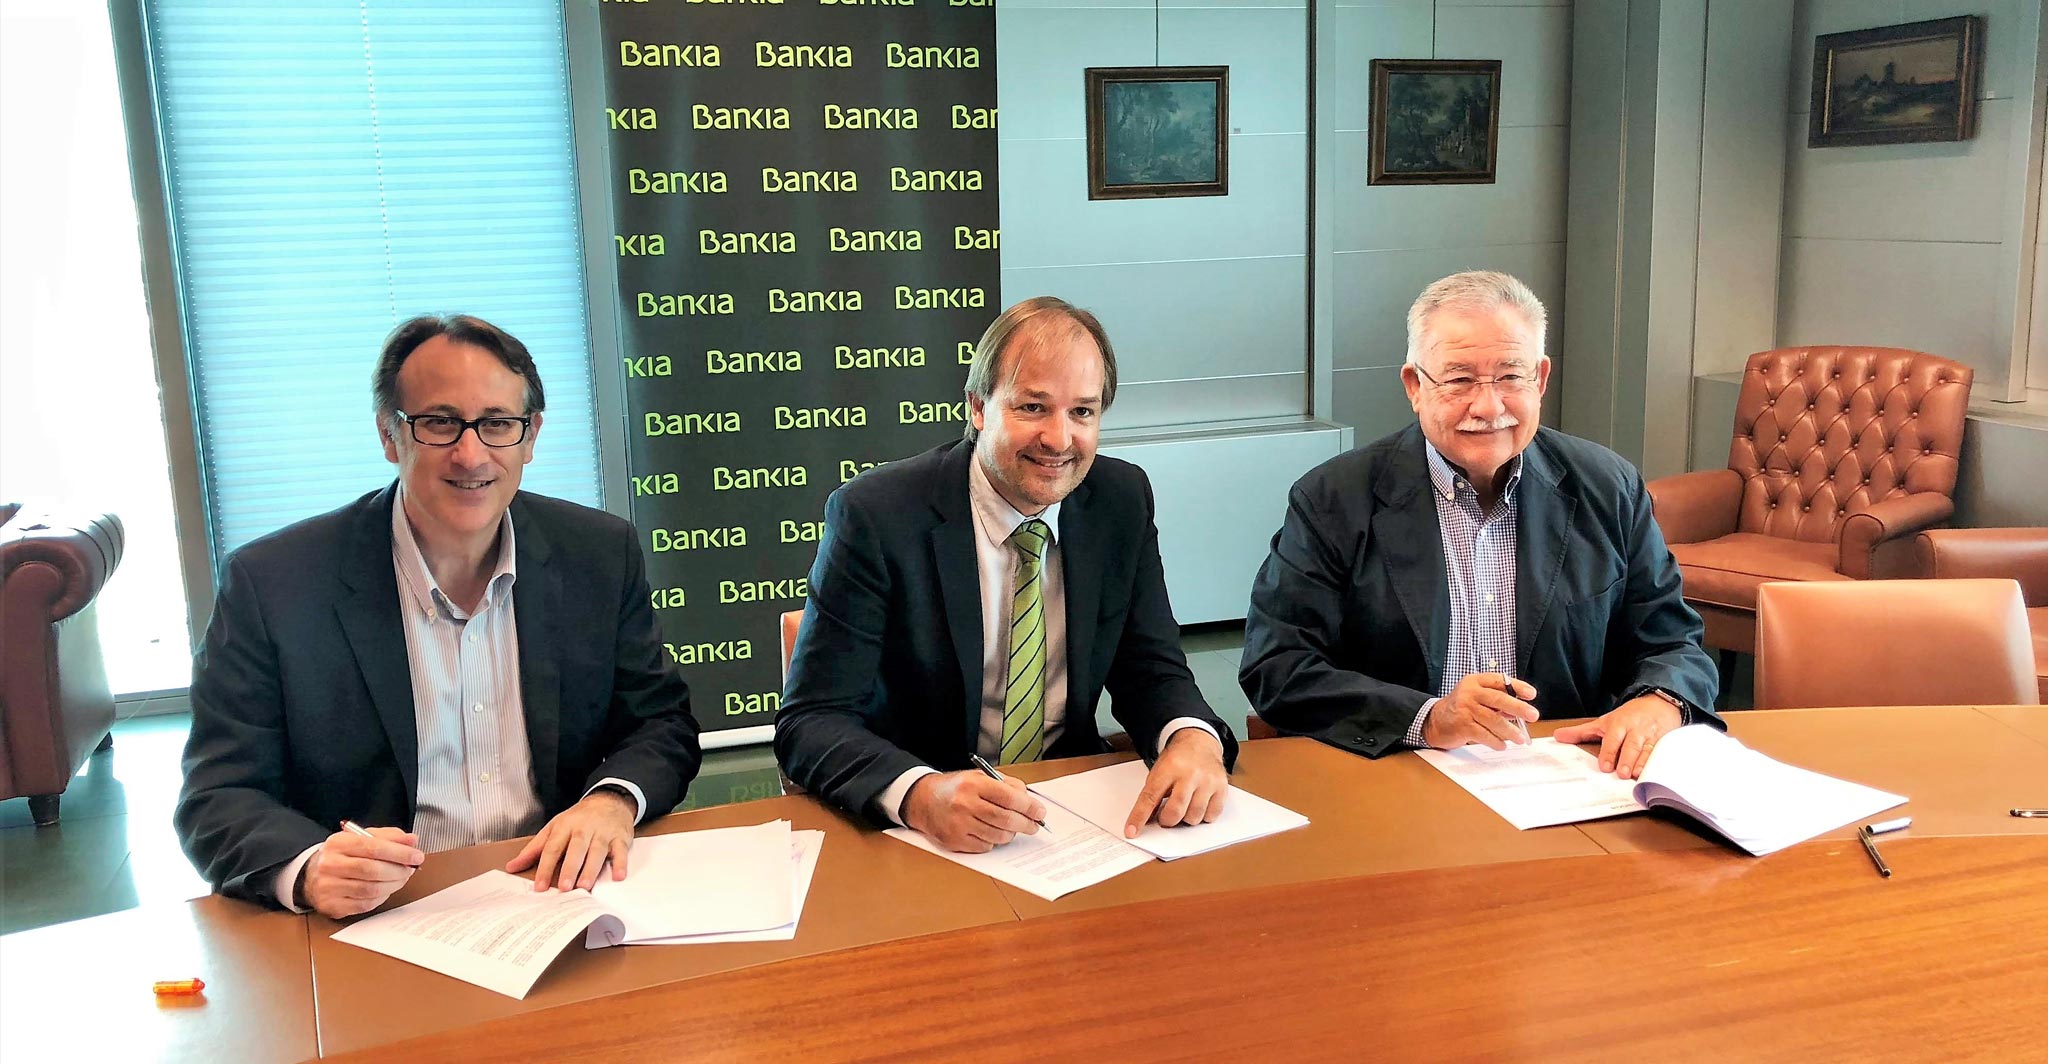 Bankia i ISBA signen un conveni de col·laboració amb l'objectiu d'impulsar el finançament de pimes i autònoms